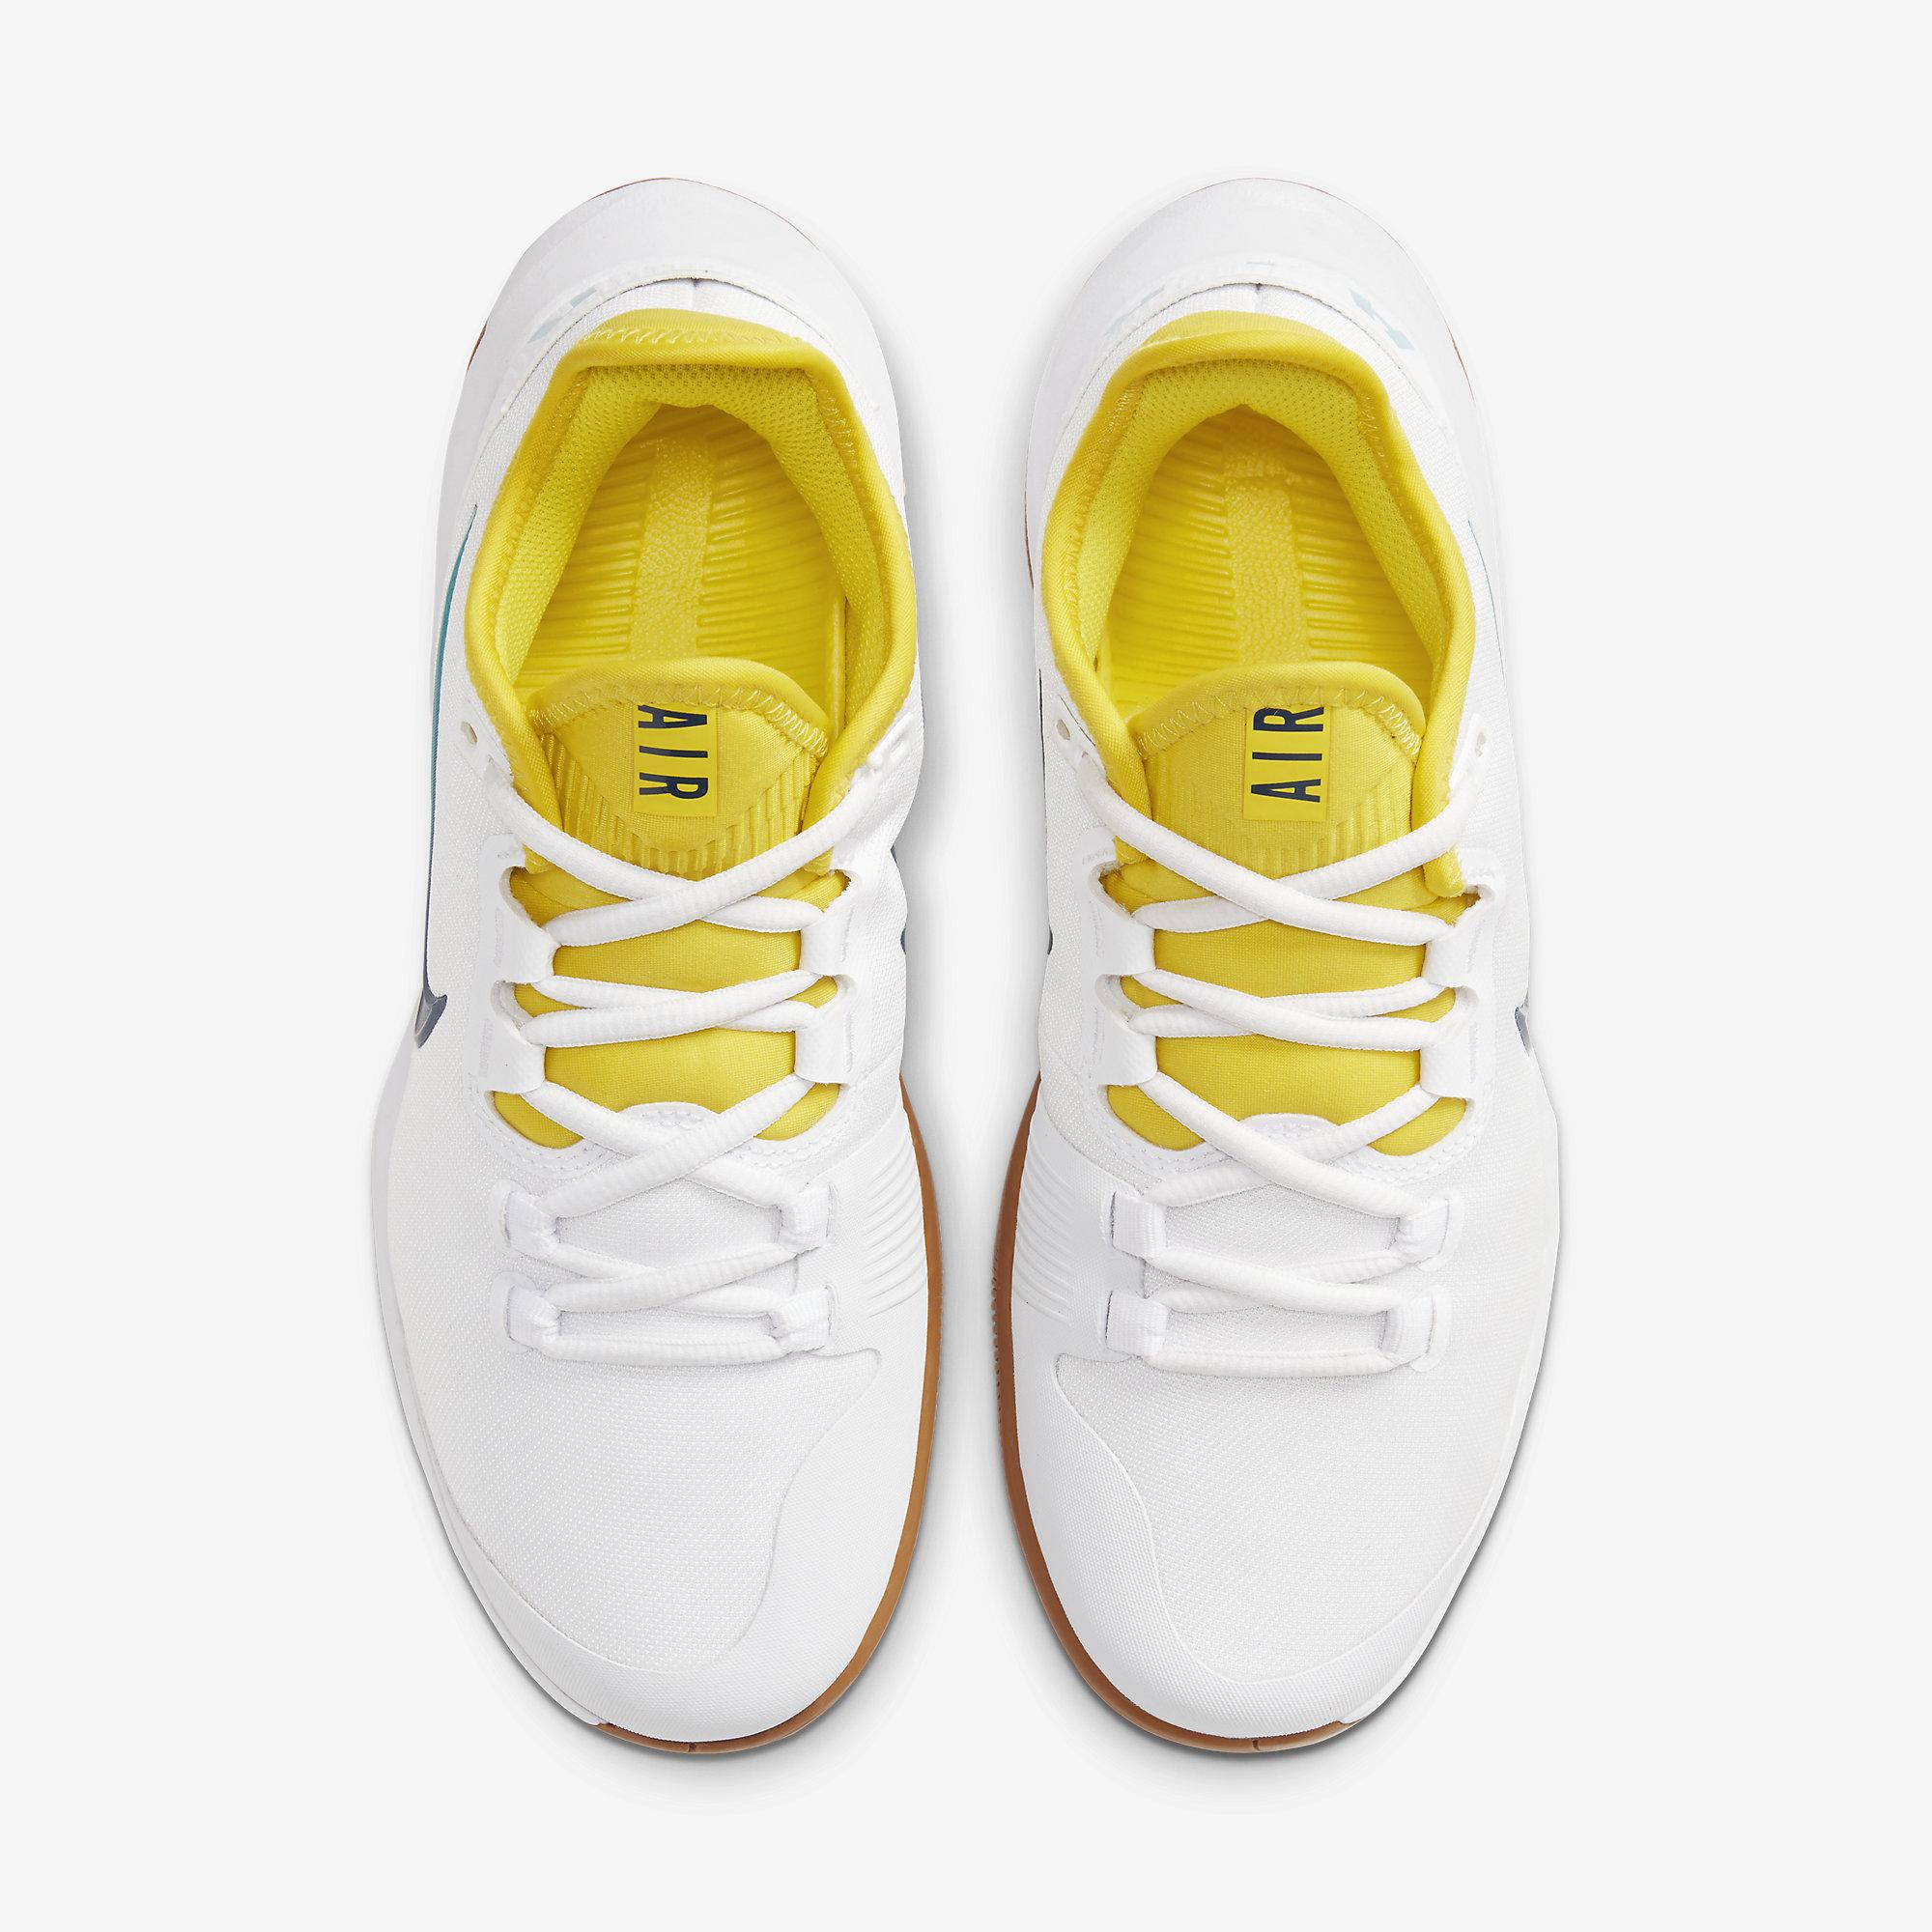 womens yellow nike tennis shoes